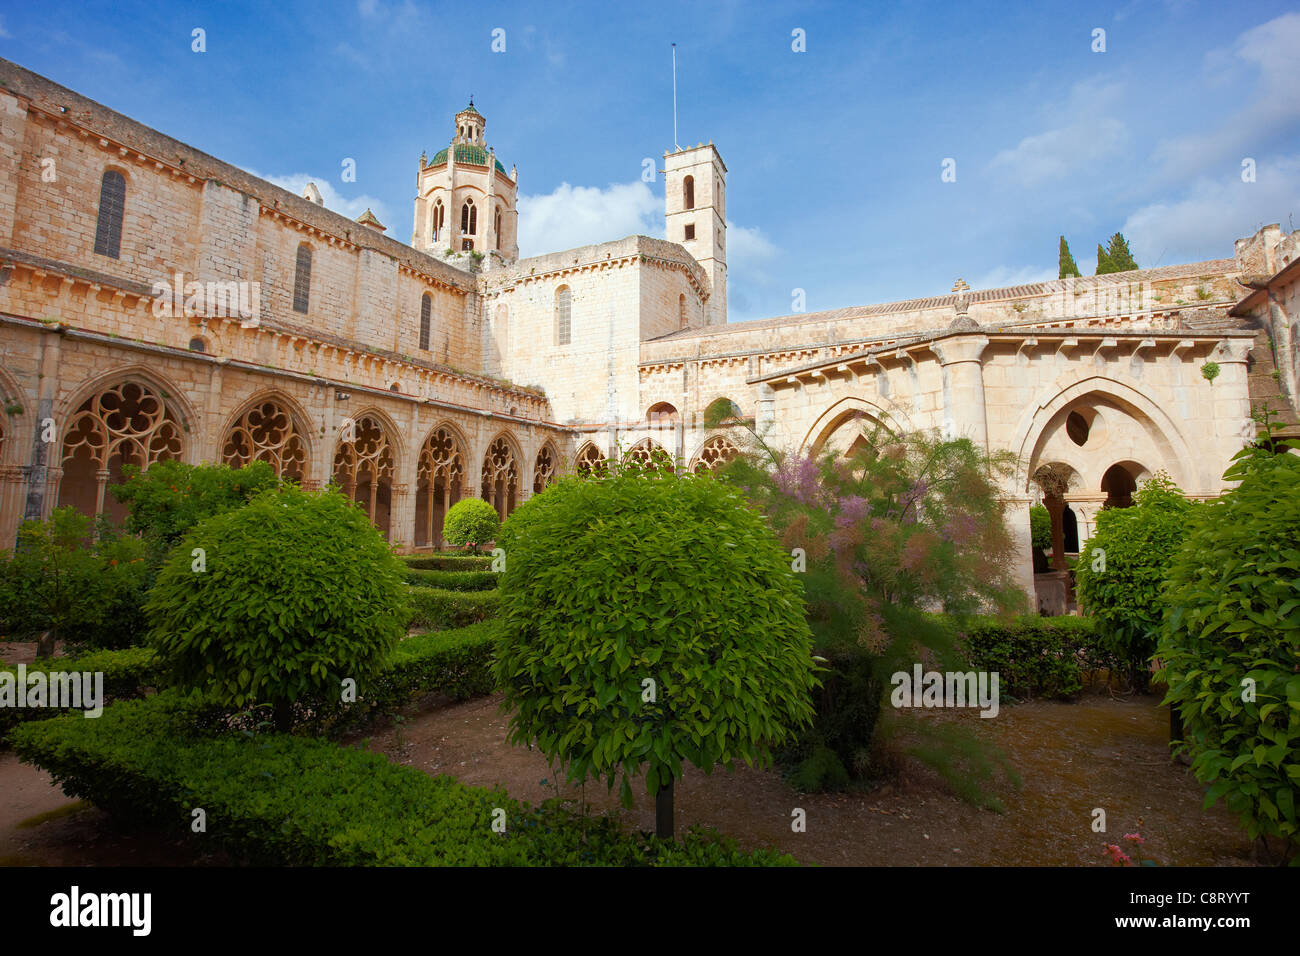 Blick auf den Innenhof in der Königlichen Abtei Santa Maria de Santes Creus. Santes Creus, Katalonien, Spanien. Stockfoto